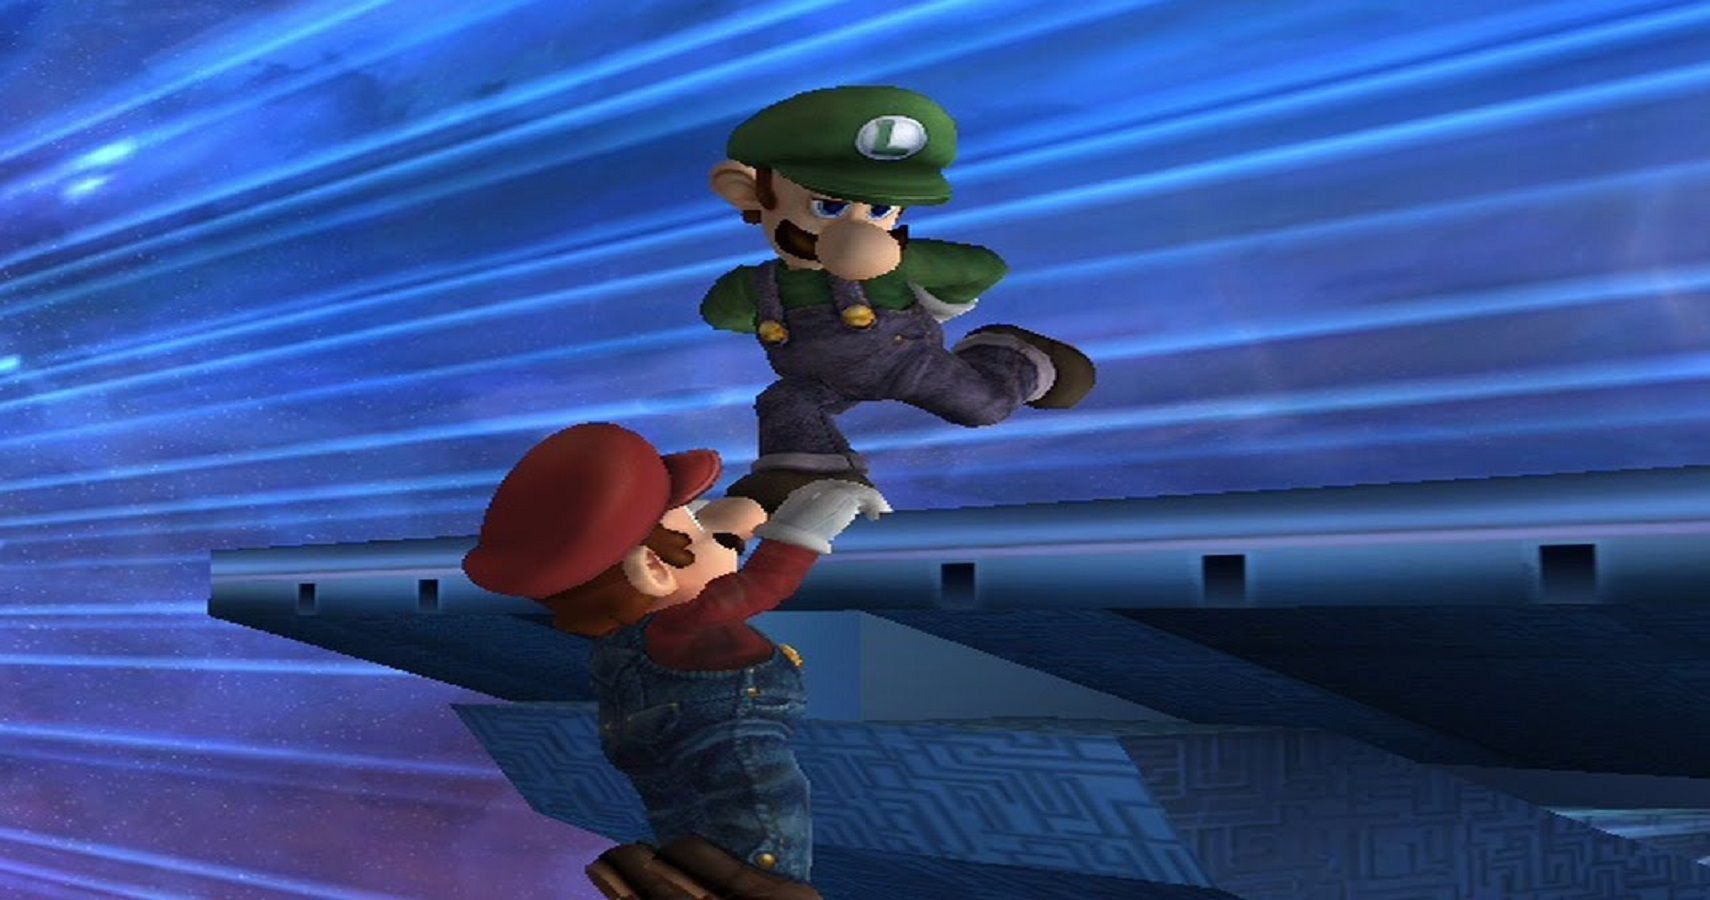 Luigi down taunt Mario Super Smash Bros.